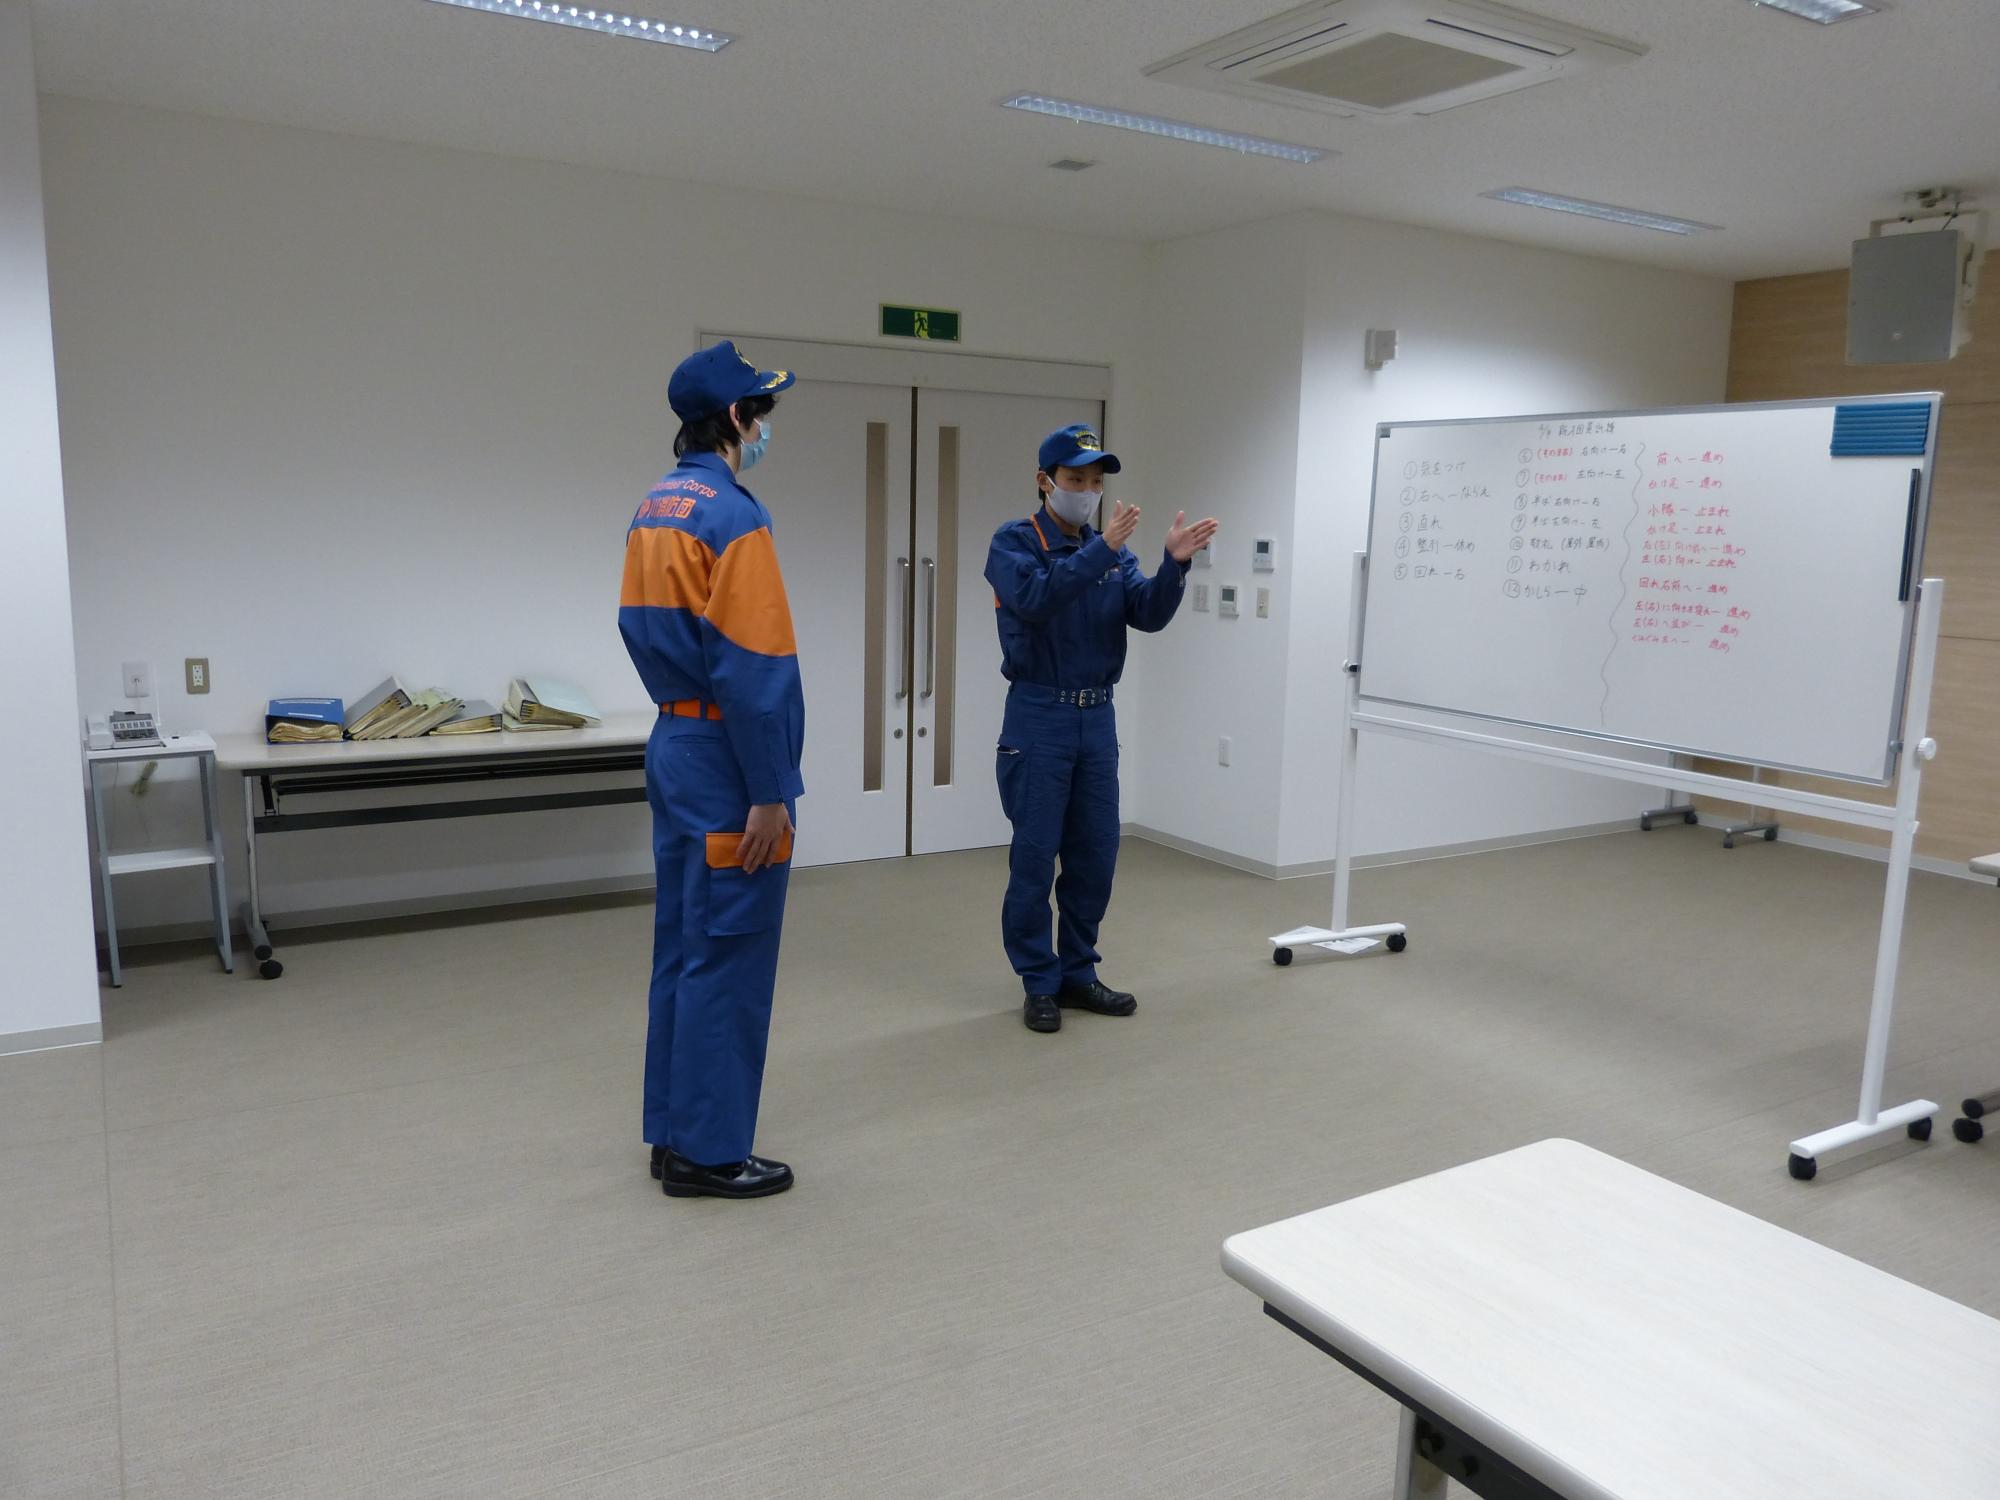 4月1日付で入団した団員が消防団員としてスタートするための基礎的な訓練を行いました。